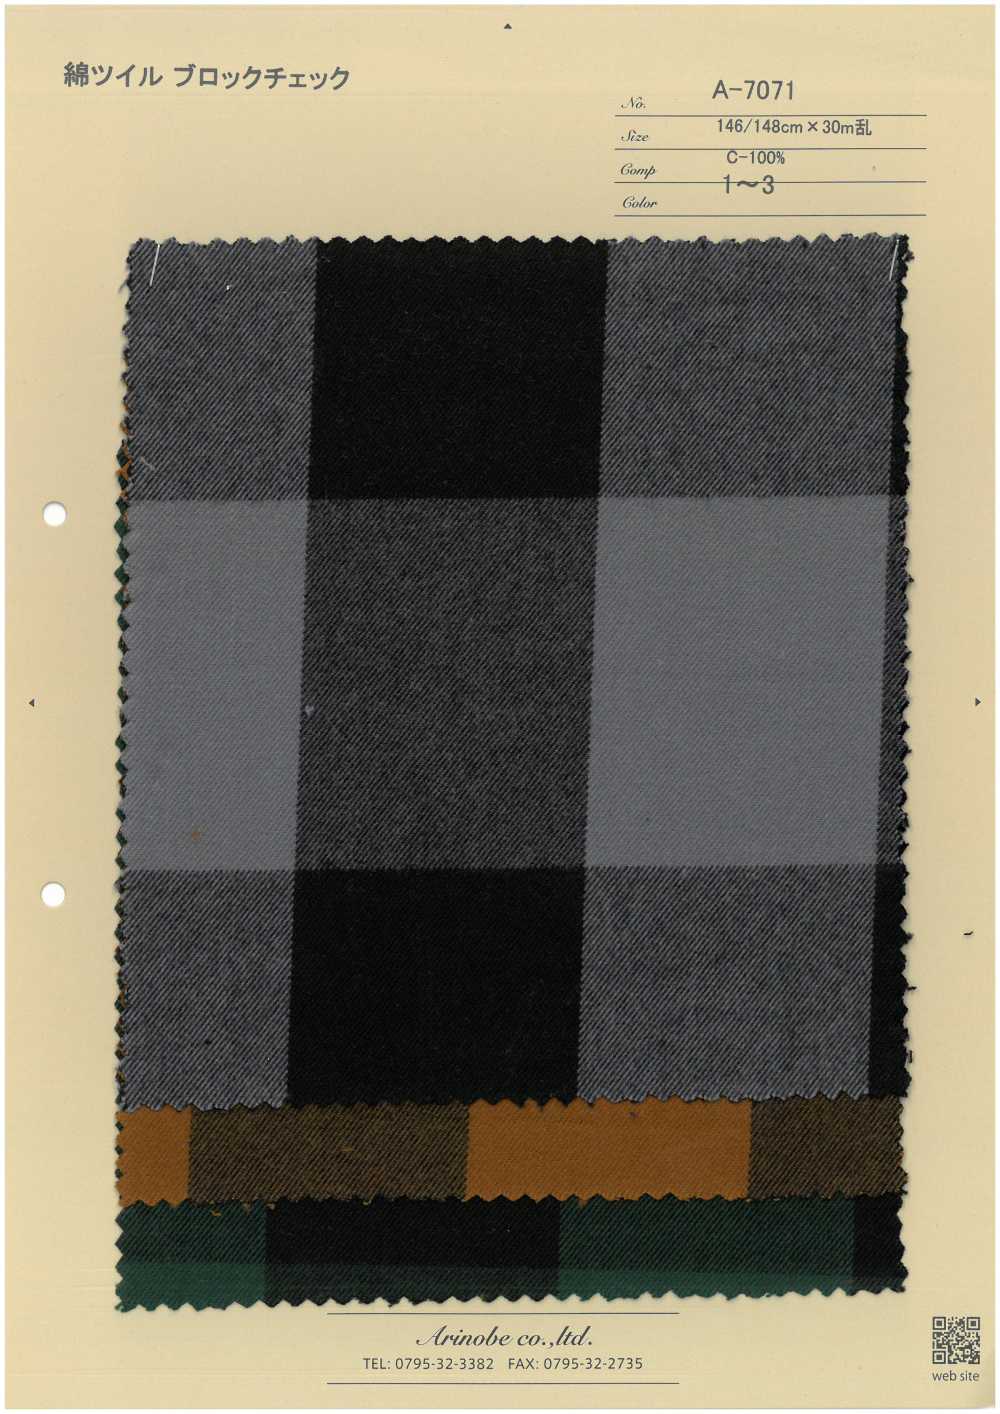 A-7071 Cotton Twill Block Check[Textile / Fabric] ARINOBE CO., LTD.